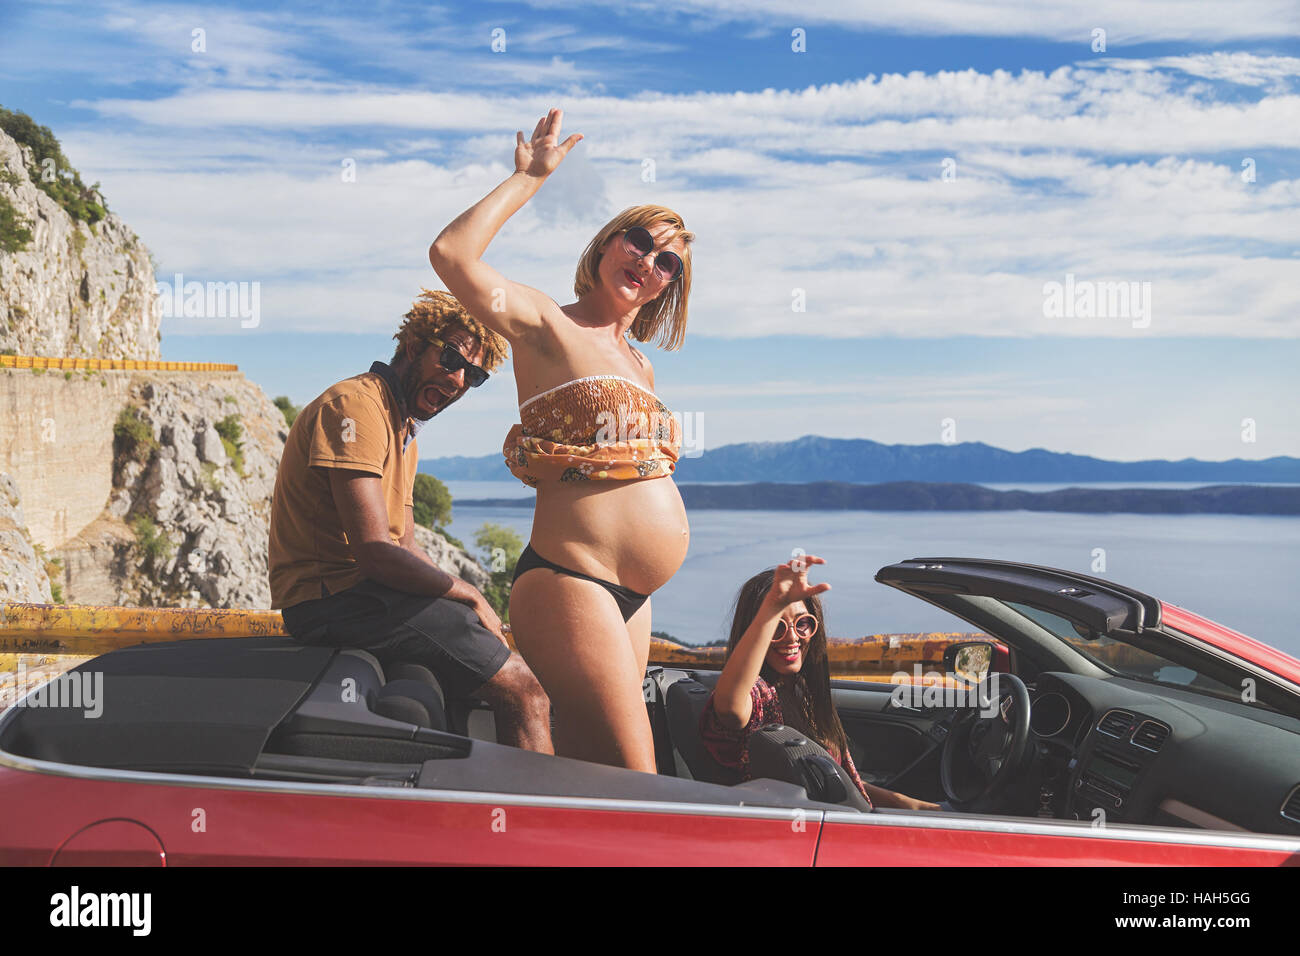 Groupe de jeunes heureux dans la red convertible. femme enceinte montrant son ventre. Matte filtre appliqué. Banque D'Images